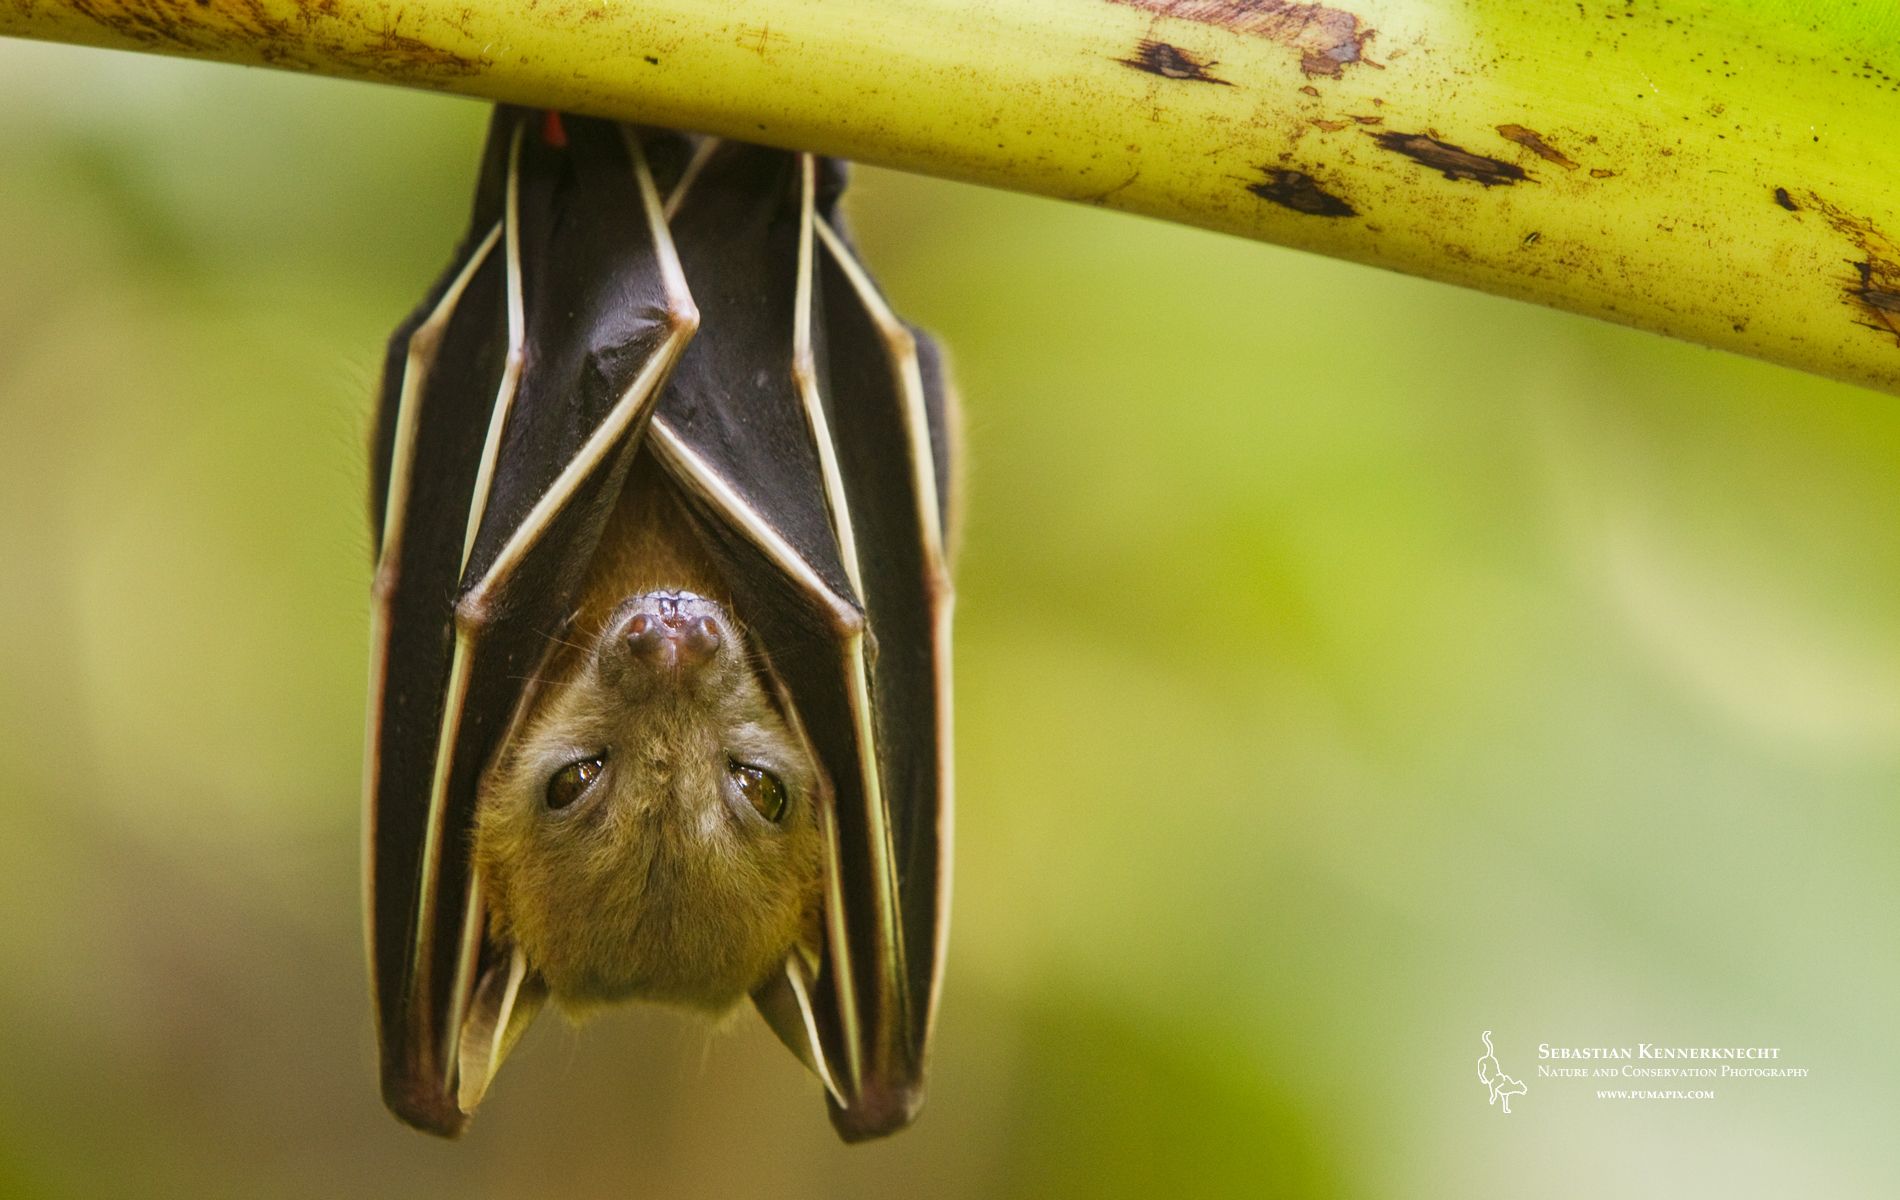 Free Nature Wallpaper for Download – Fruit Bat | Sebastian ...